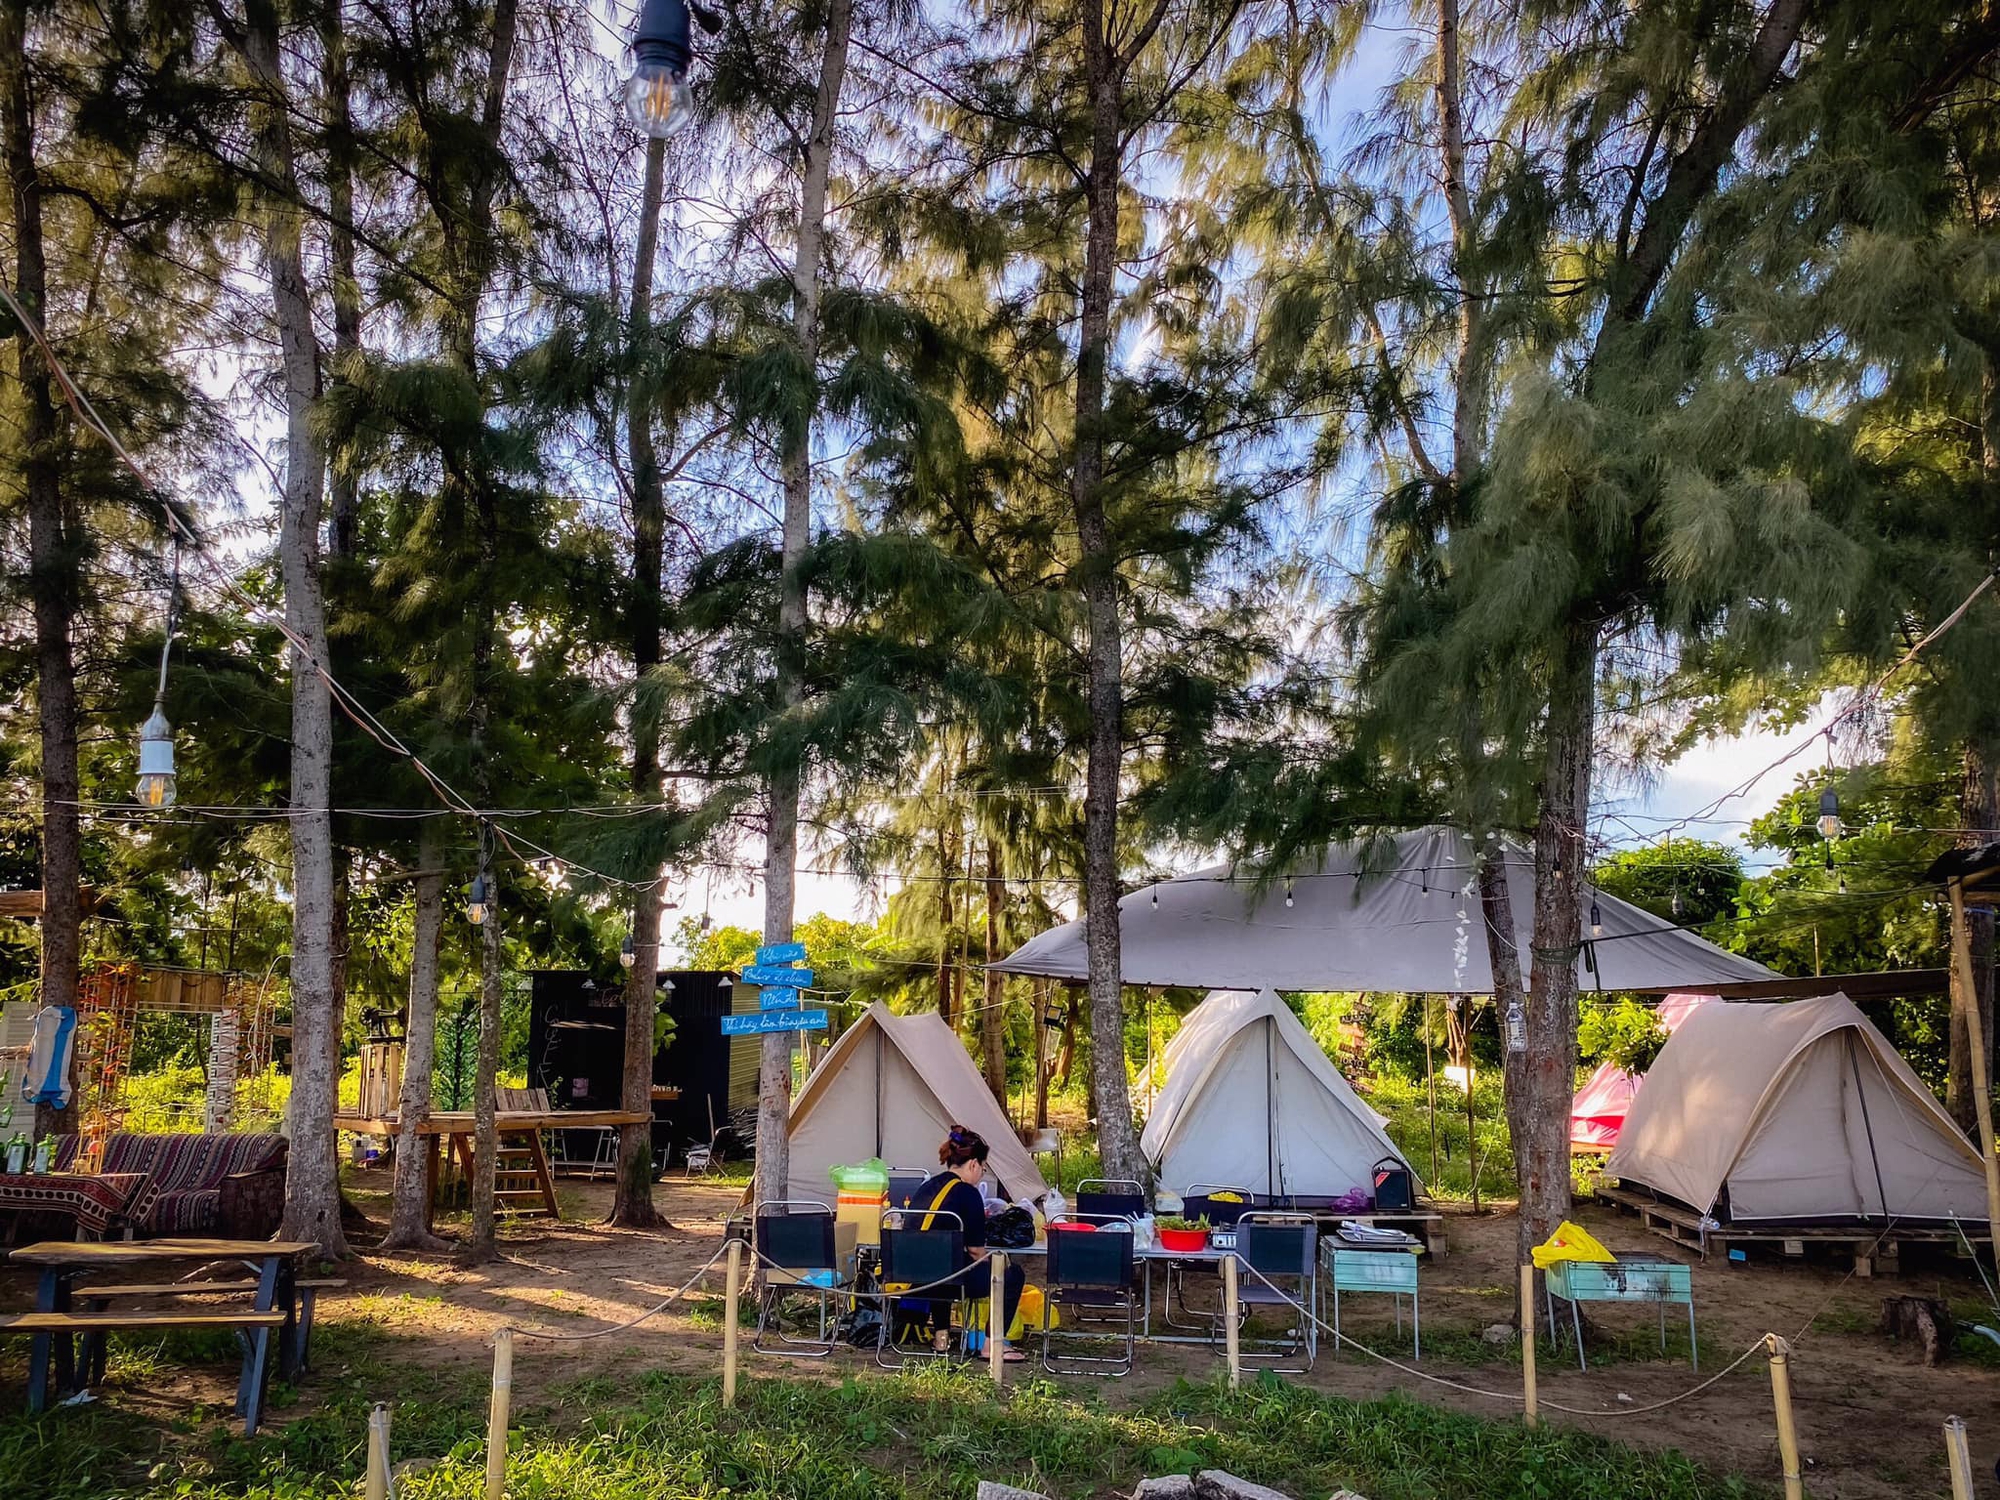 Khu cắm trại Cần Giờ nổi tiếng với dân TP.HCM vì có nhiều hoạt động vui chơi thư giãn - ảnh 10